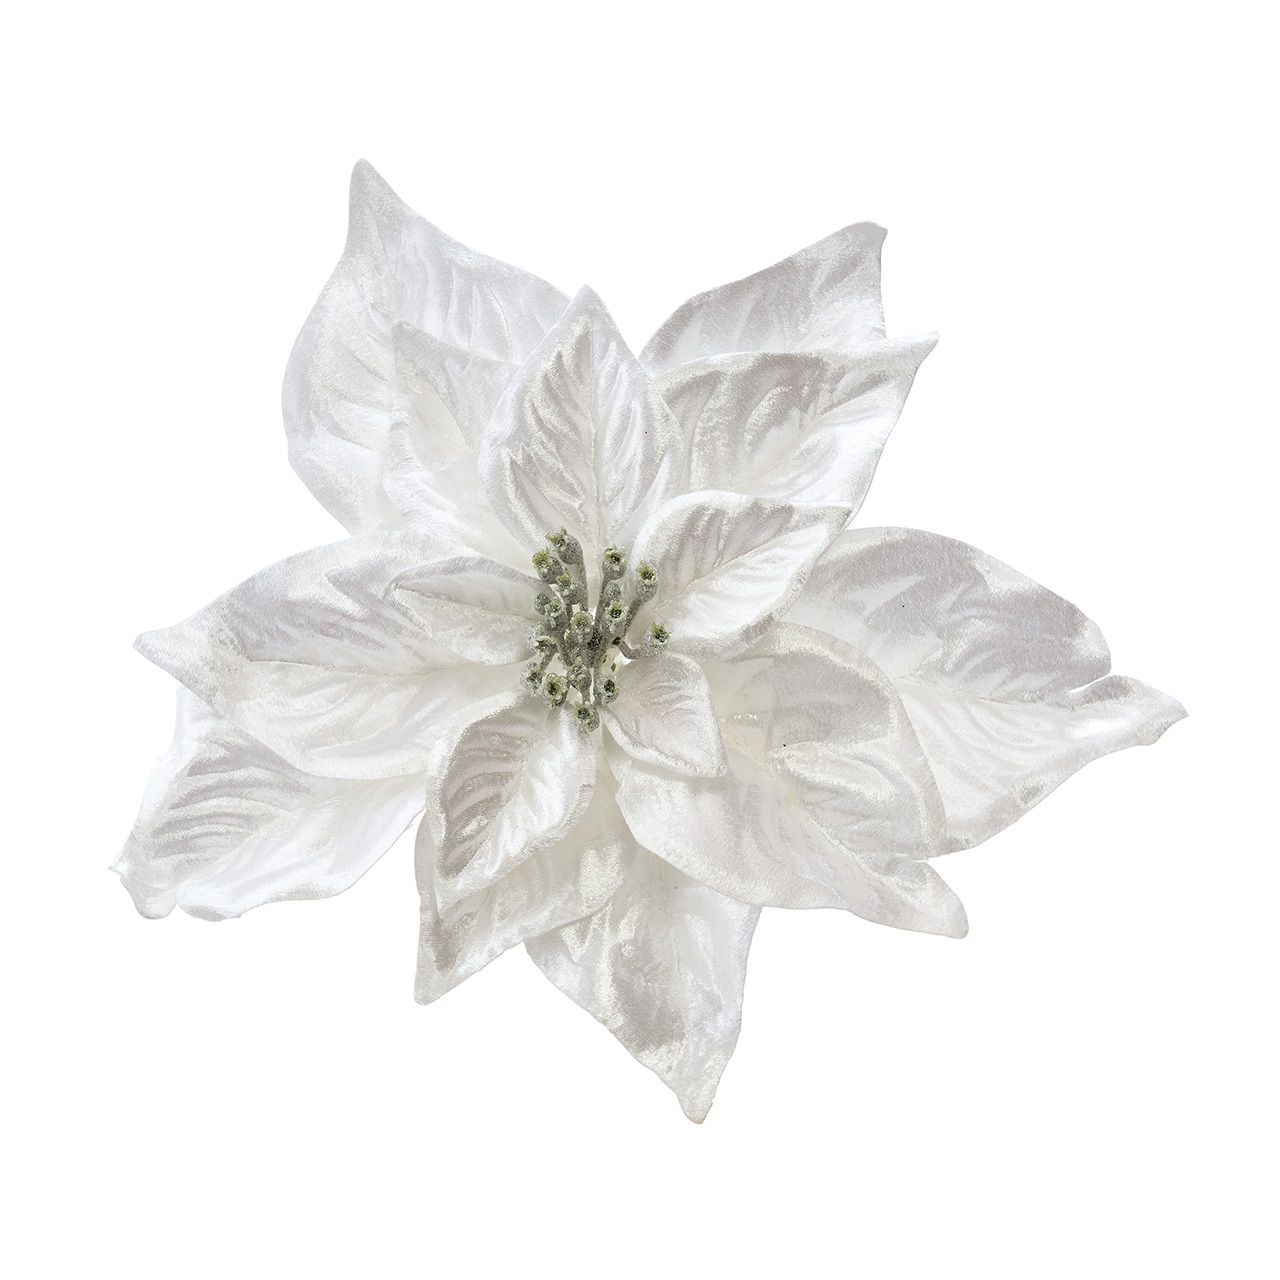 マイフラ 通販 Magiq ポインセチアクリップ ホワイト アーティフィシャルフラワー 造花 Fx 001 ポインセチア ホワイト Magiq アーティフィシャルフラワー 造花 全国にmagiq 花器 花資材などをお届けします